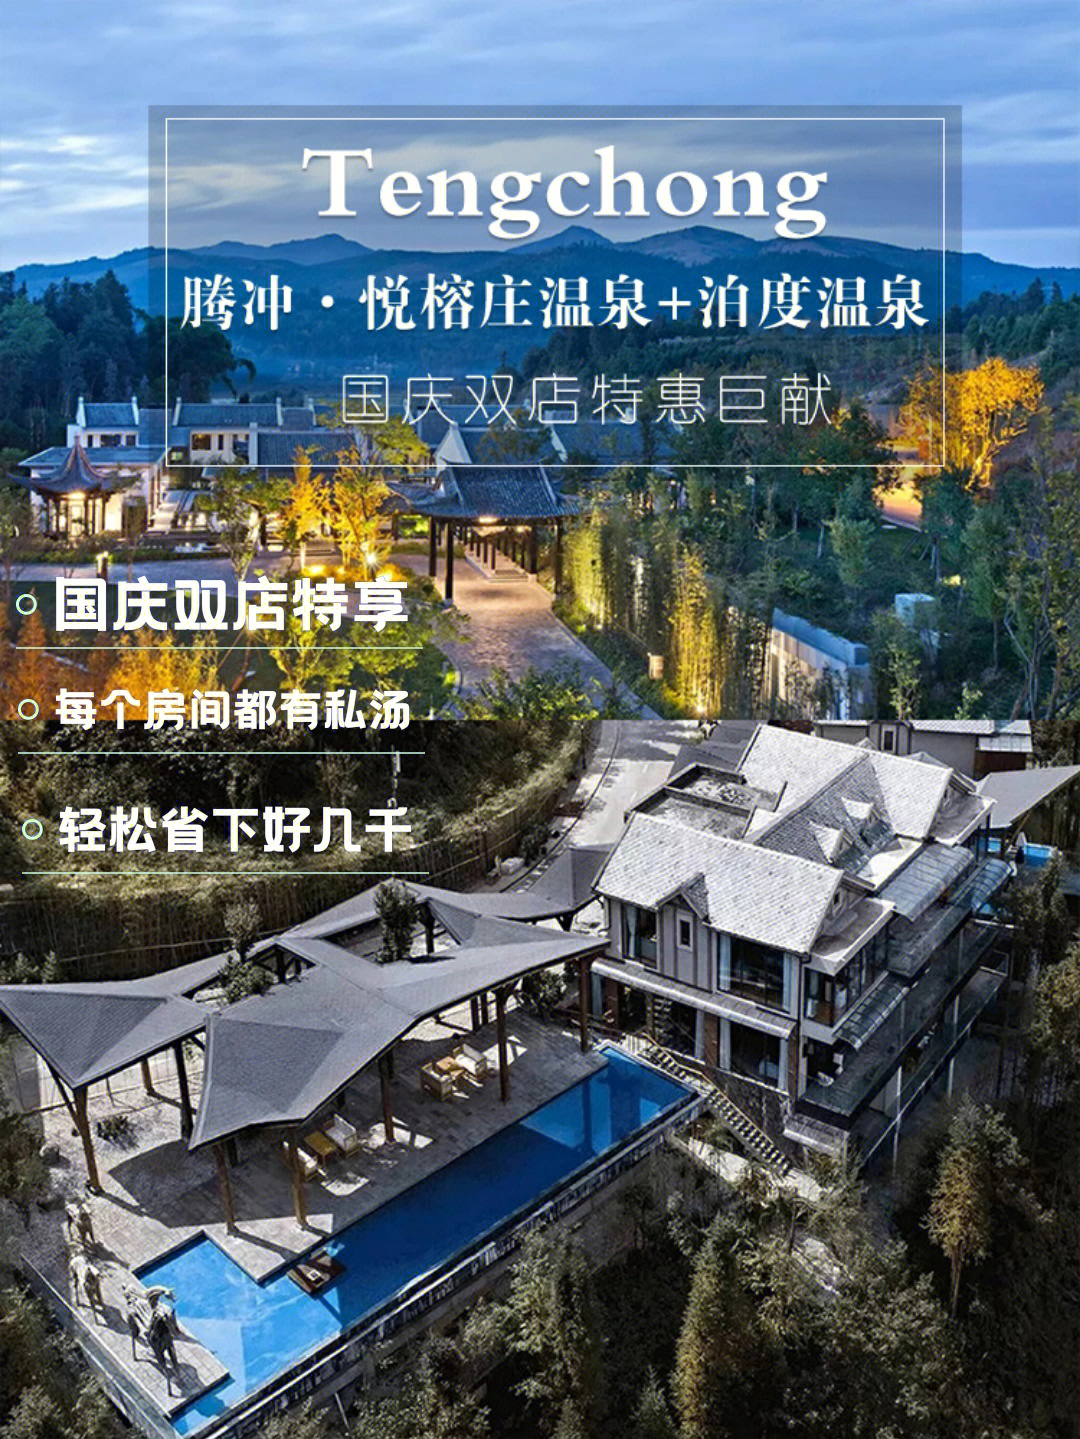 腾冲温泉民宿包月推荐图片